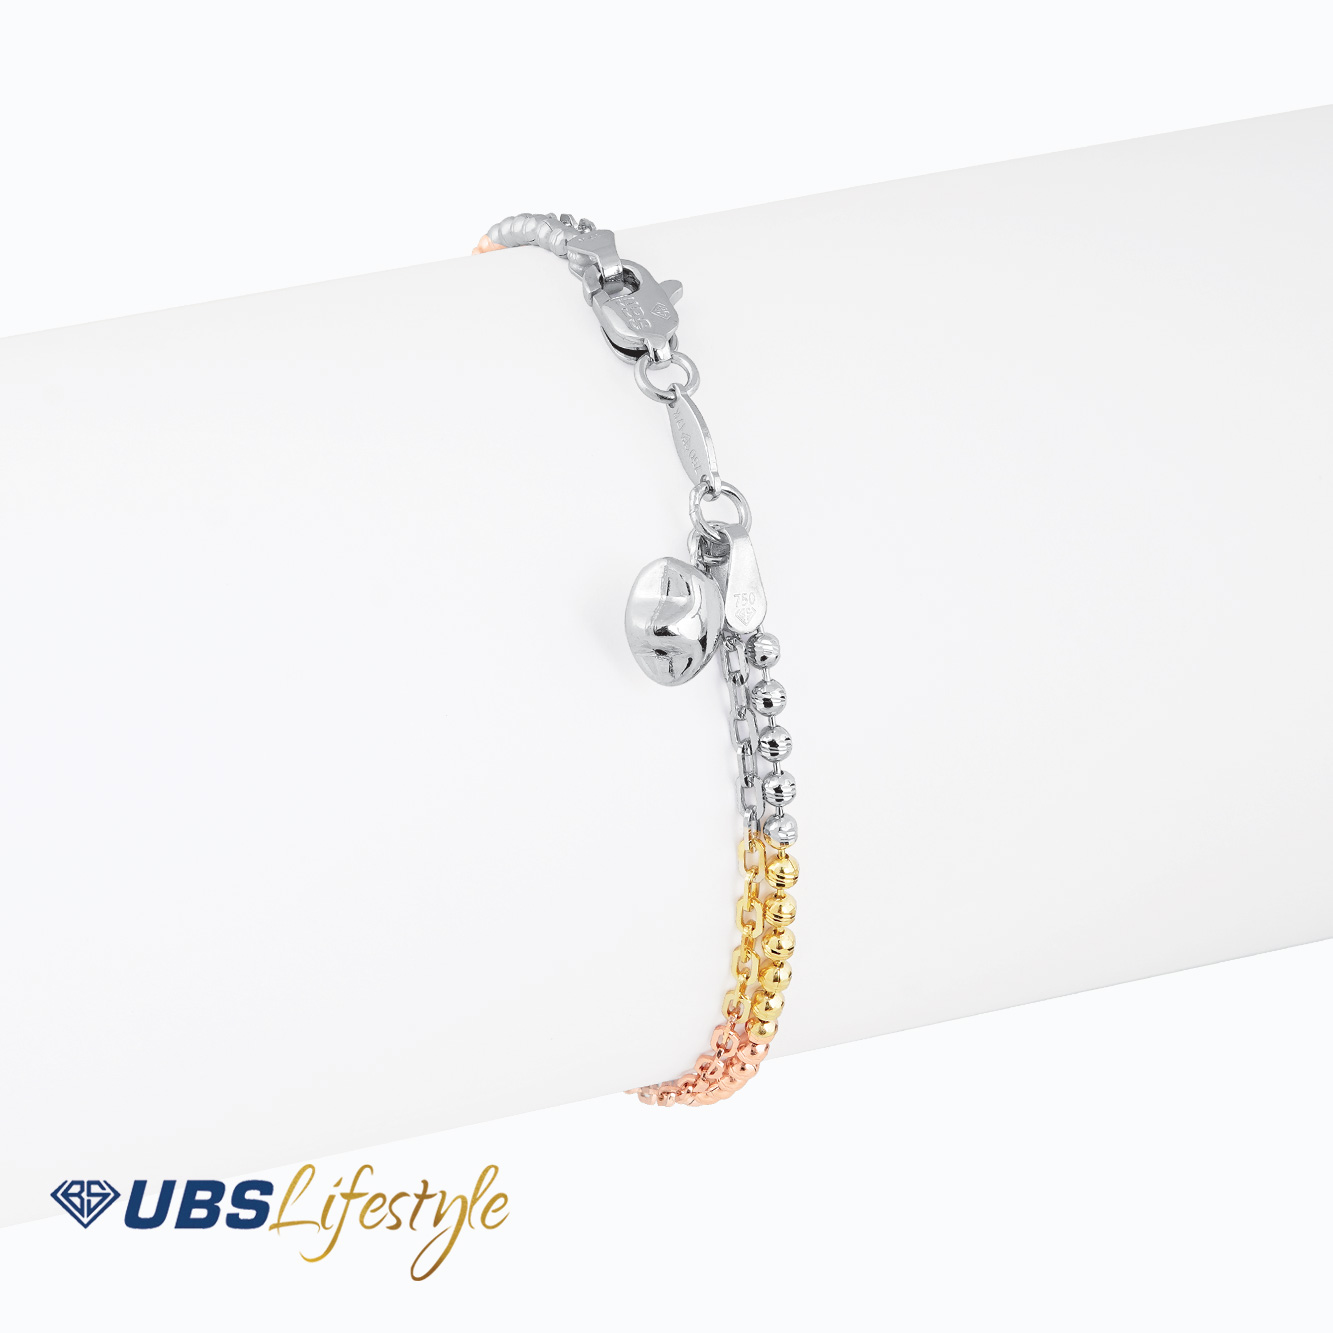 UBS Gelang Emas - Kkp6279 - 17K